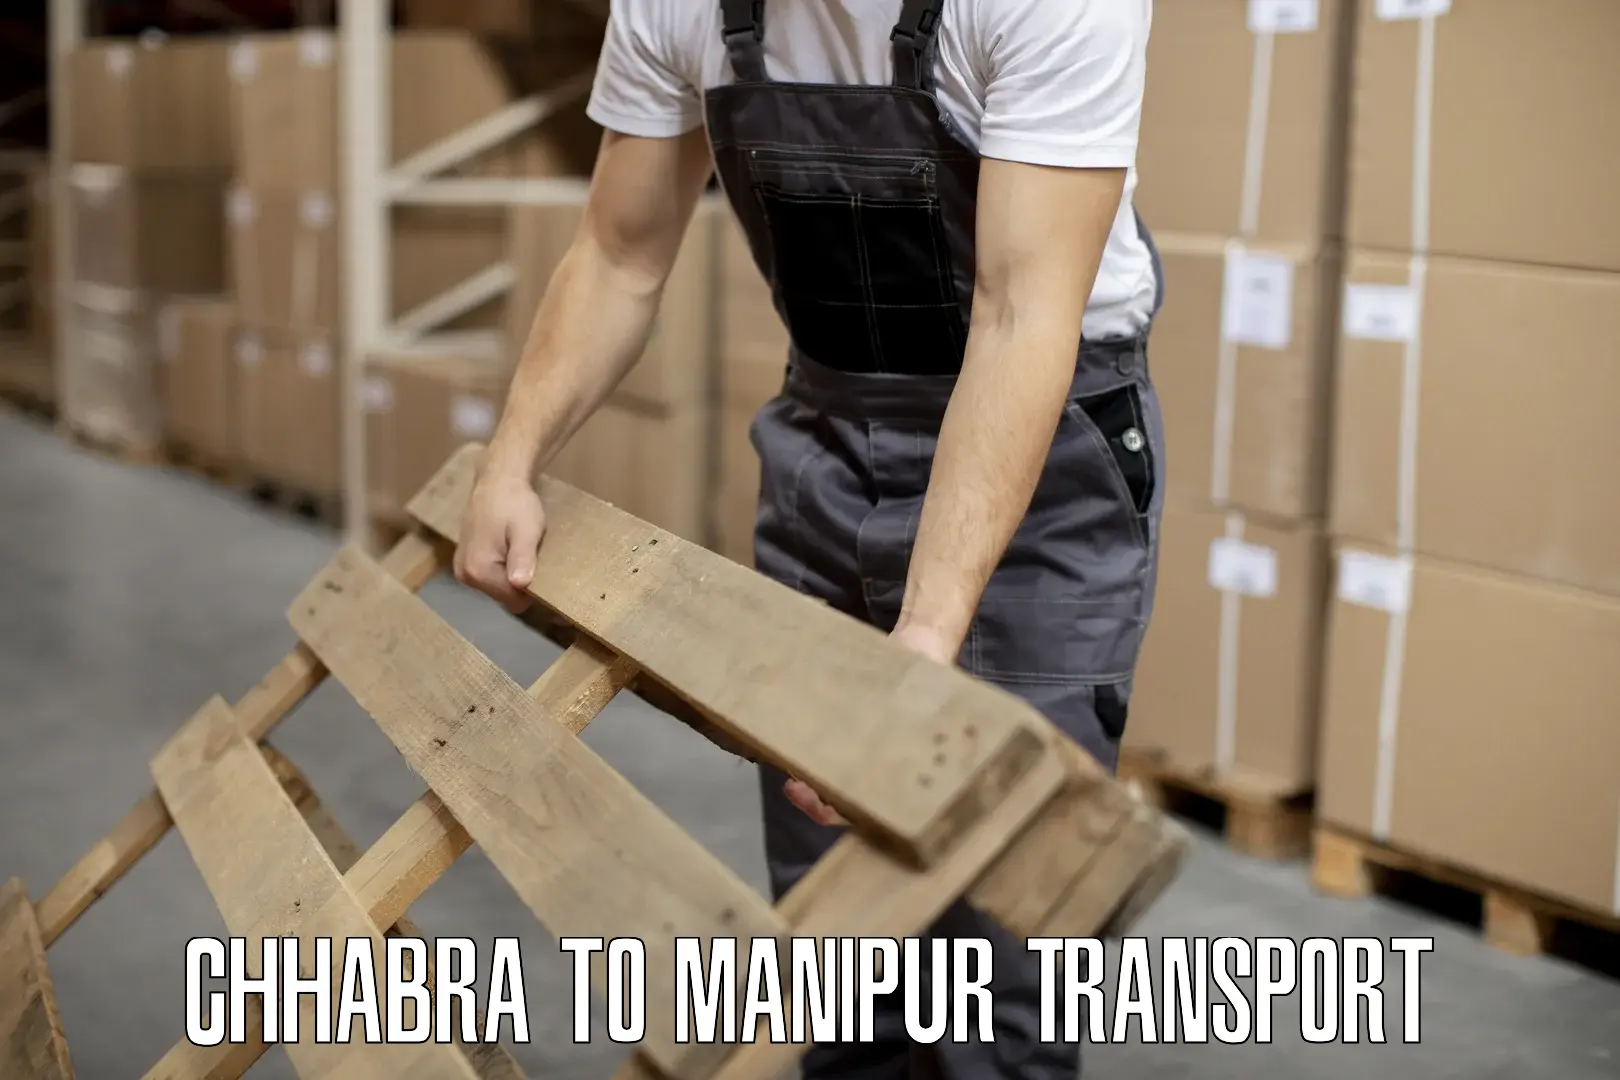 Furniture transport service Chhabra to Kanti